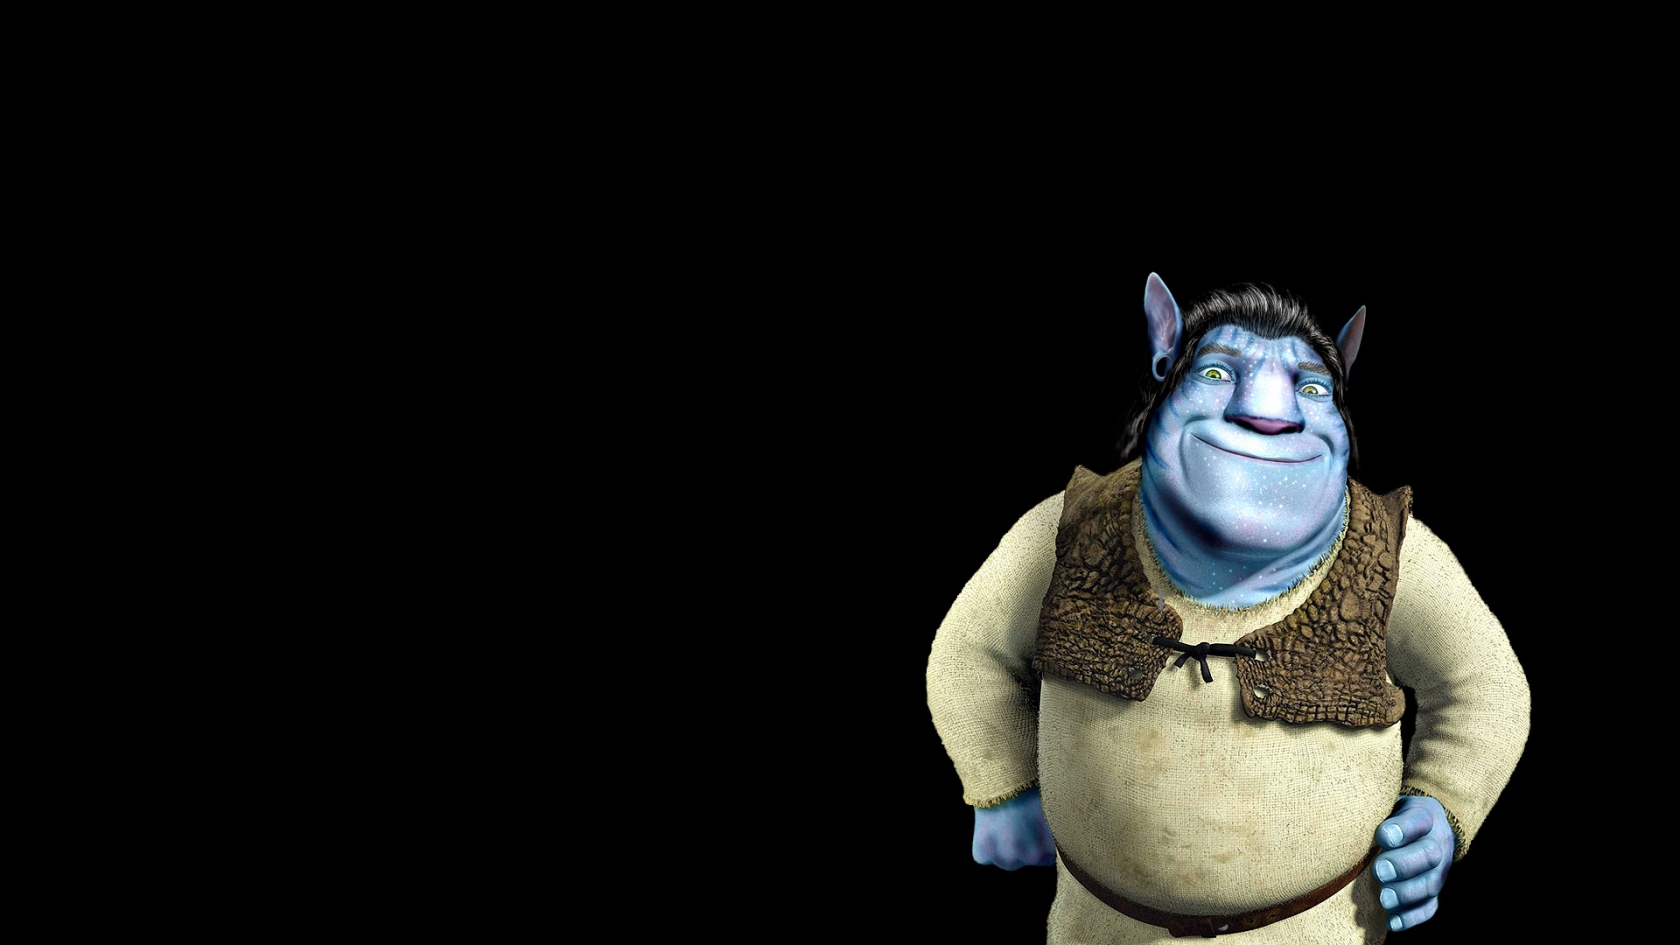 Shrek Avatar for 1680 x 945 HDTV resolution